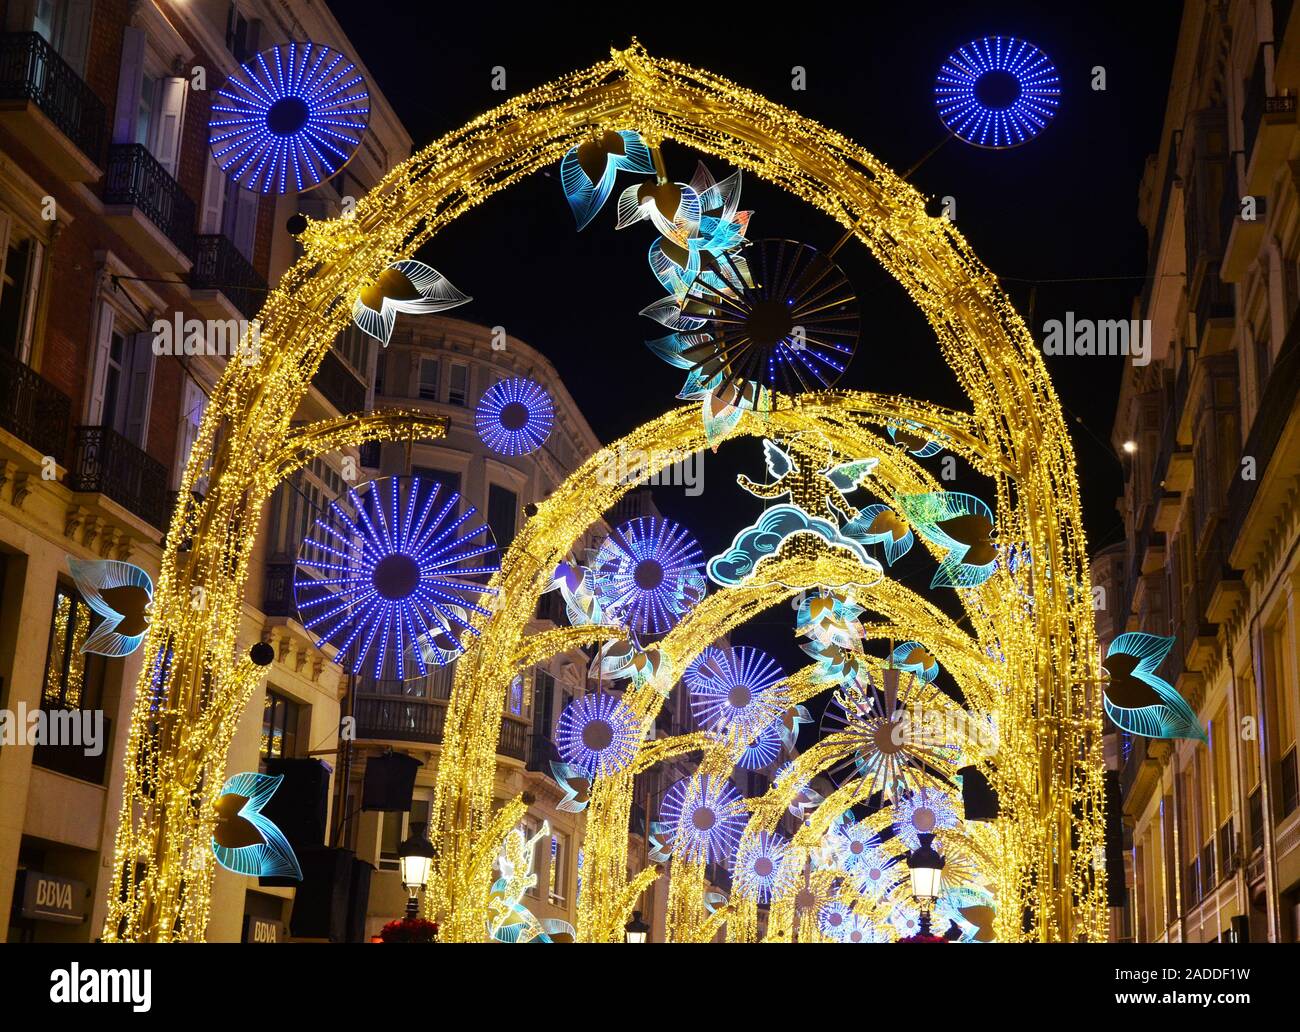 Calle Larios, die Hauptstraße von Malaga, Spanien, während Weihnachten 2019 Stockfoto